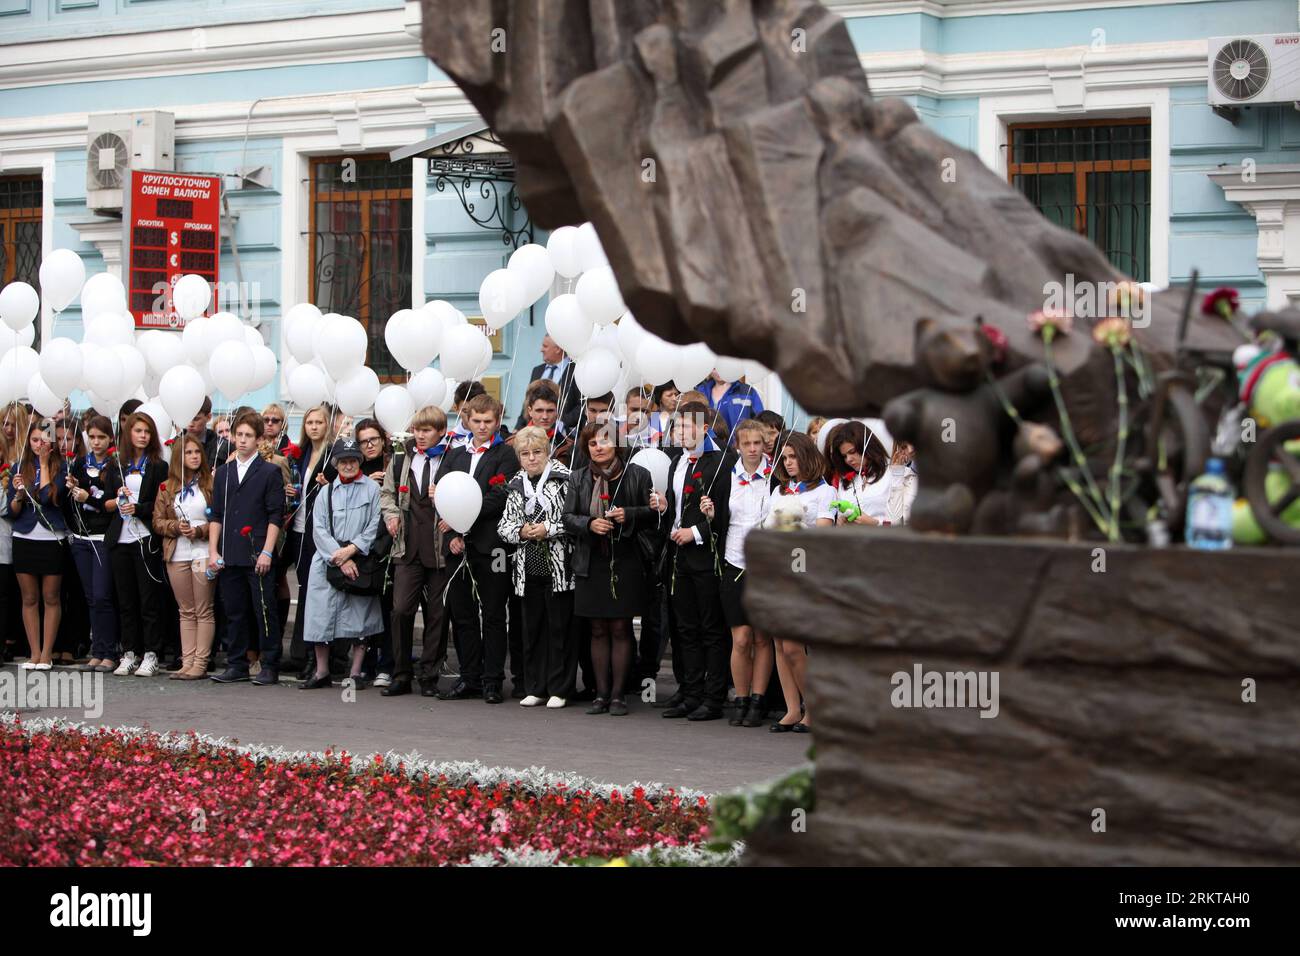 Bildnummer: 58424111 Datum: 03.09.2012 Copyright: Imago/Xinhua (120903) -- MOSCÚ, 3 de septiembre de 2012 (Xinhua) -- al lado de un monumento a las víctimas del ataque terrorista de Beslán, durante una conmemoración en Moscú, Rusia, el 3 de septiembre de 2012. El 1 de septiembre de 2004, los separatistas chechenos llevaron a más de 1.000 maestros, padres y niños al gimnasio de la Escuela Nº 1 de Beslan. El gimnasio estaba equipado con explosivos y un total de 334 rehenes, incluidos 186 niños, perdieron la vida cuando el asedio llegó a su sangrienta conclusión tres días después. (XINHUA) RUSIA-MOSCÚ-BESLÁN-TERRORISMO-CONMEMORACIÓN PUBLICATI Foto de stock